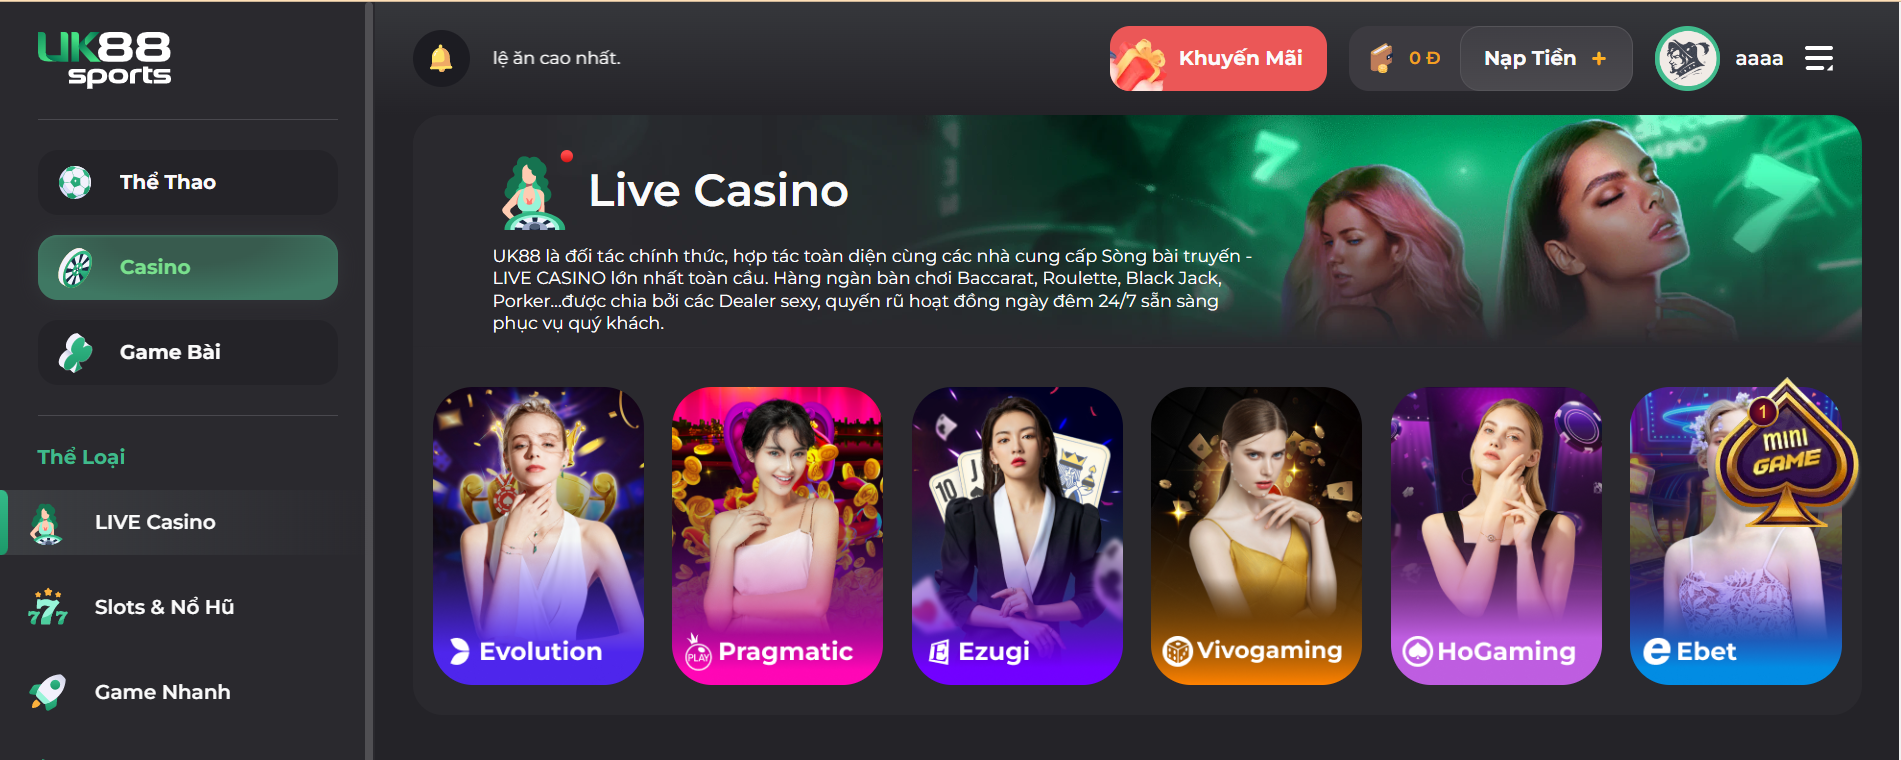 Chiến Thuật casino trực tuyến từ chuyên gia UK88